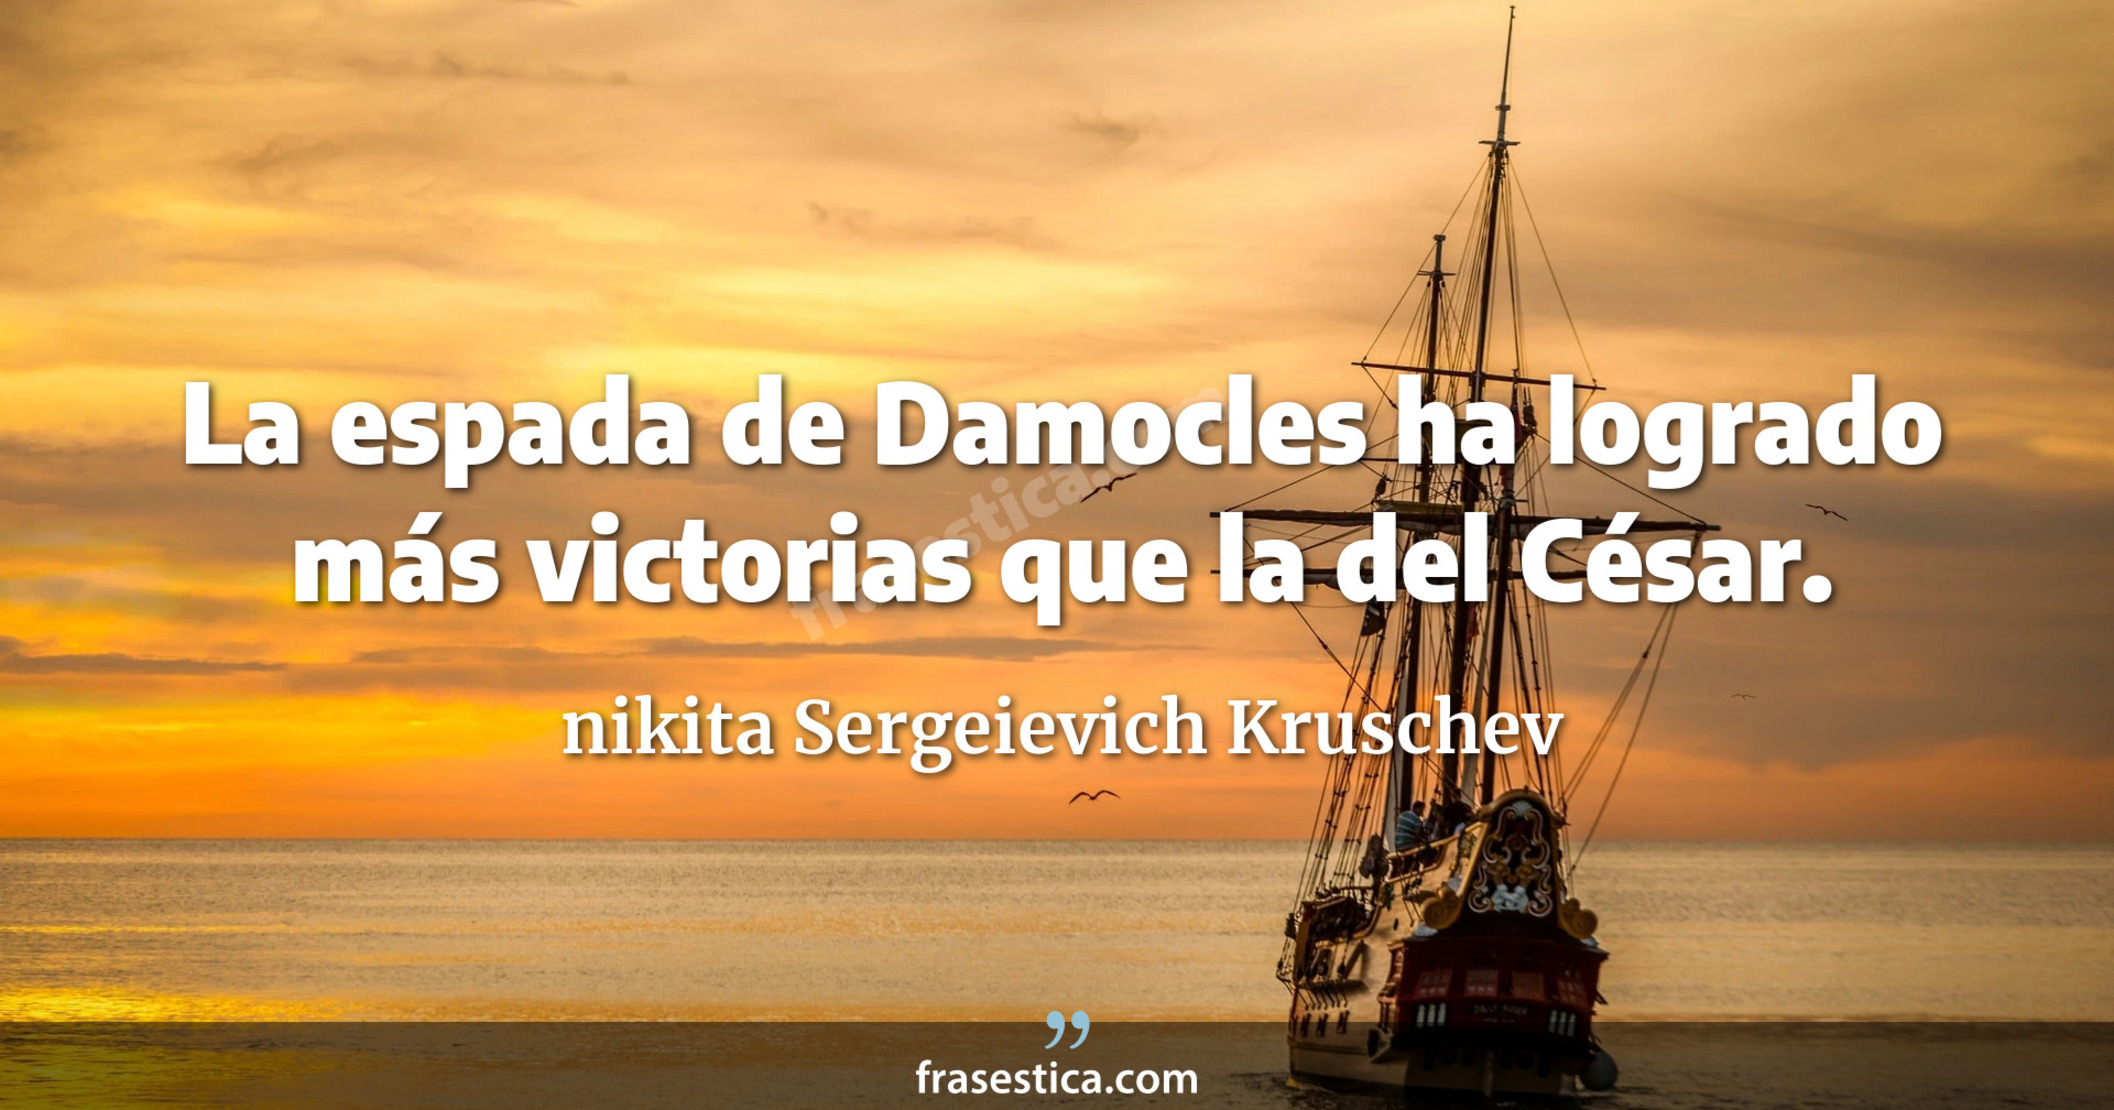 La espada de Damocles ha logrado más victorias que la del César. - nikita Sergeievich Kruschev